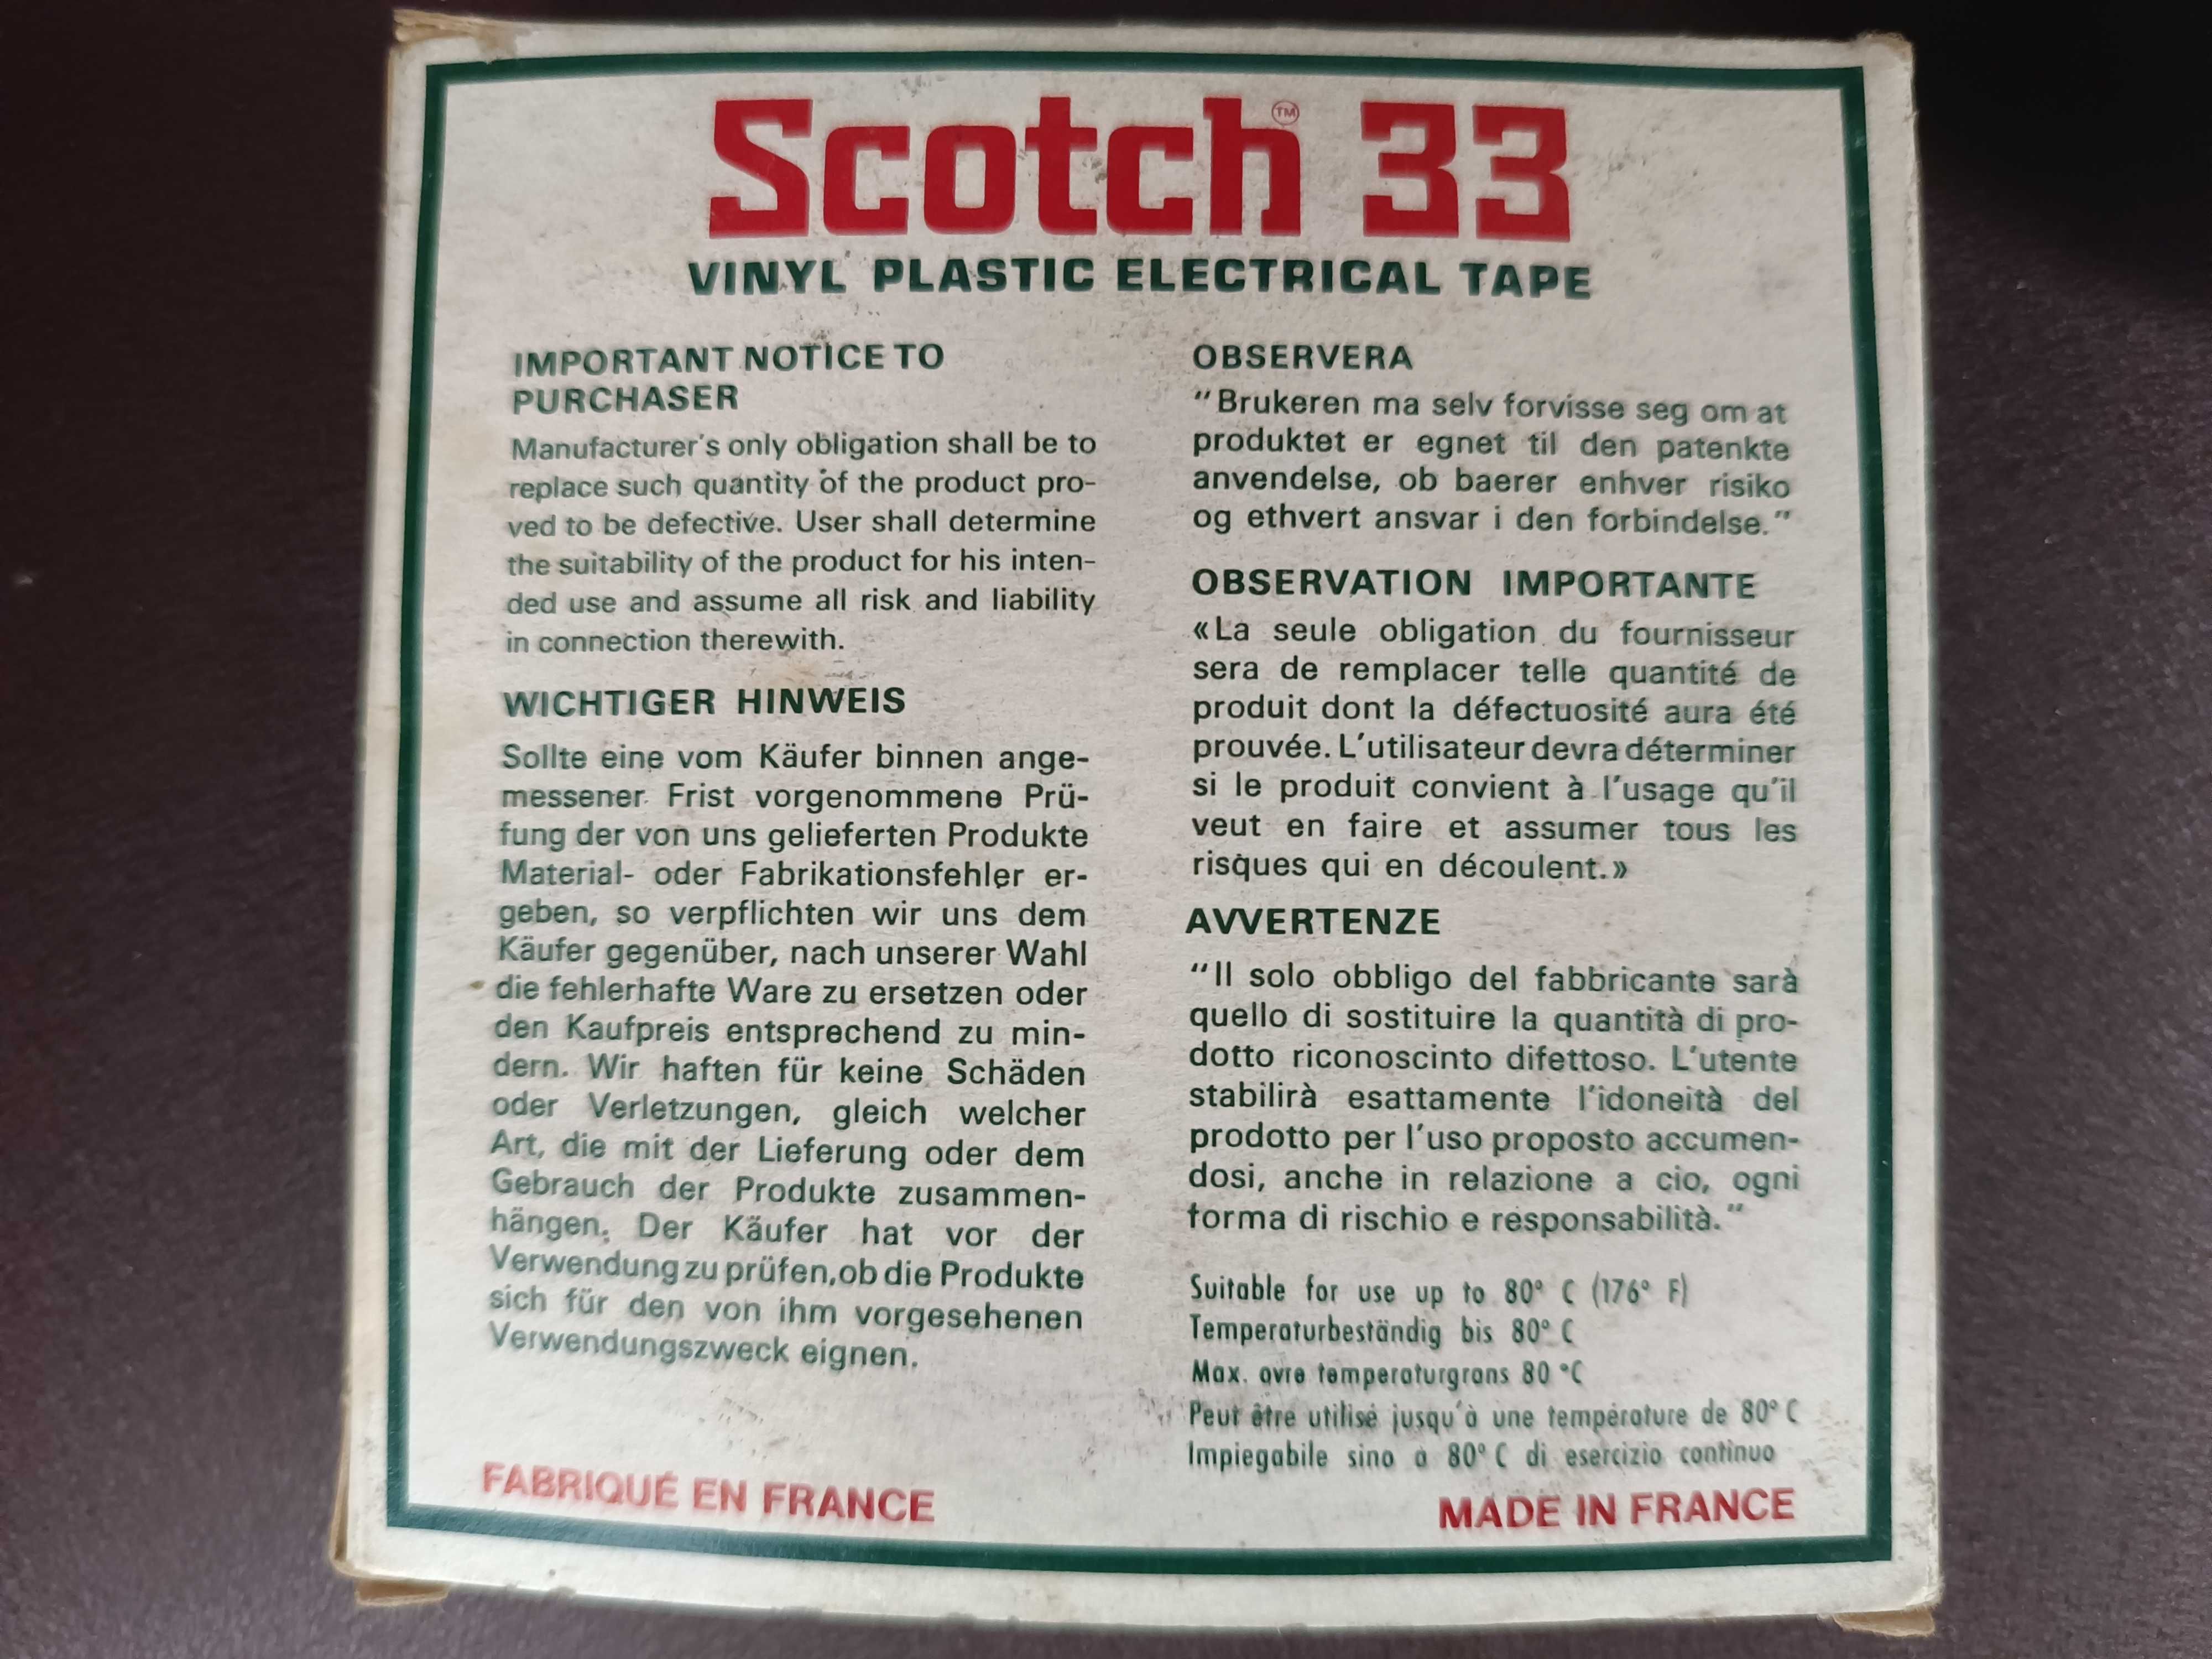 Taśma Scotch 33 vinyl kolekcjonerska